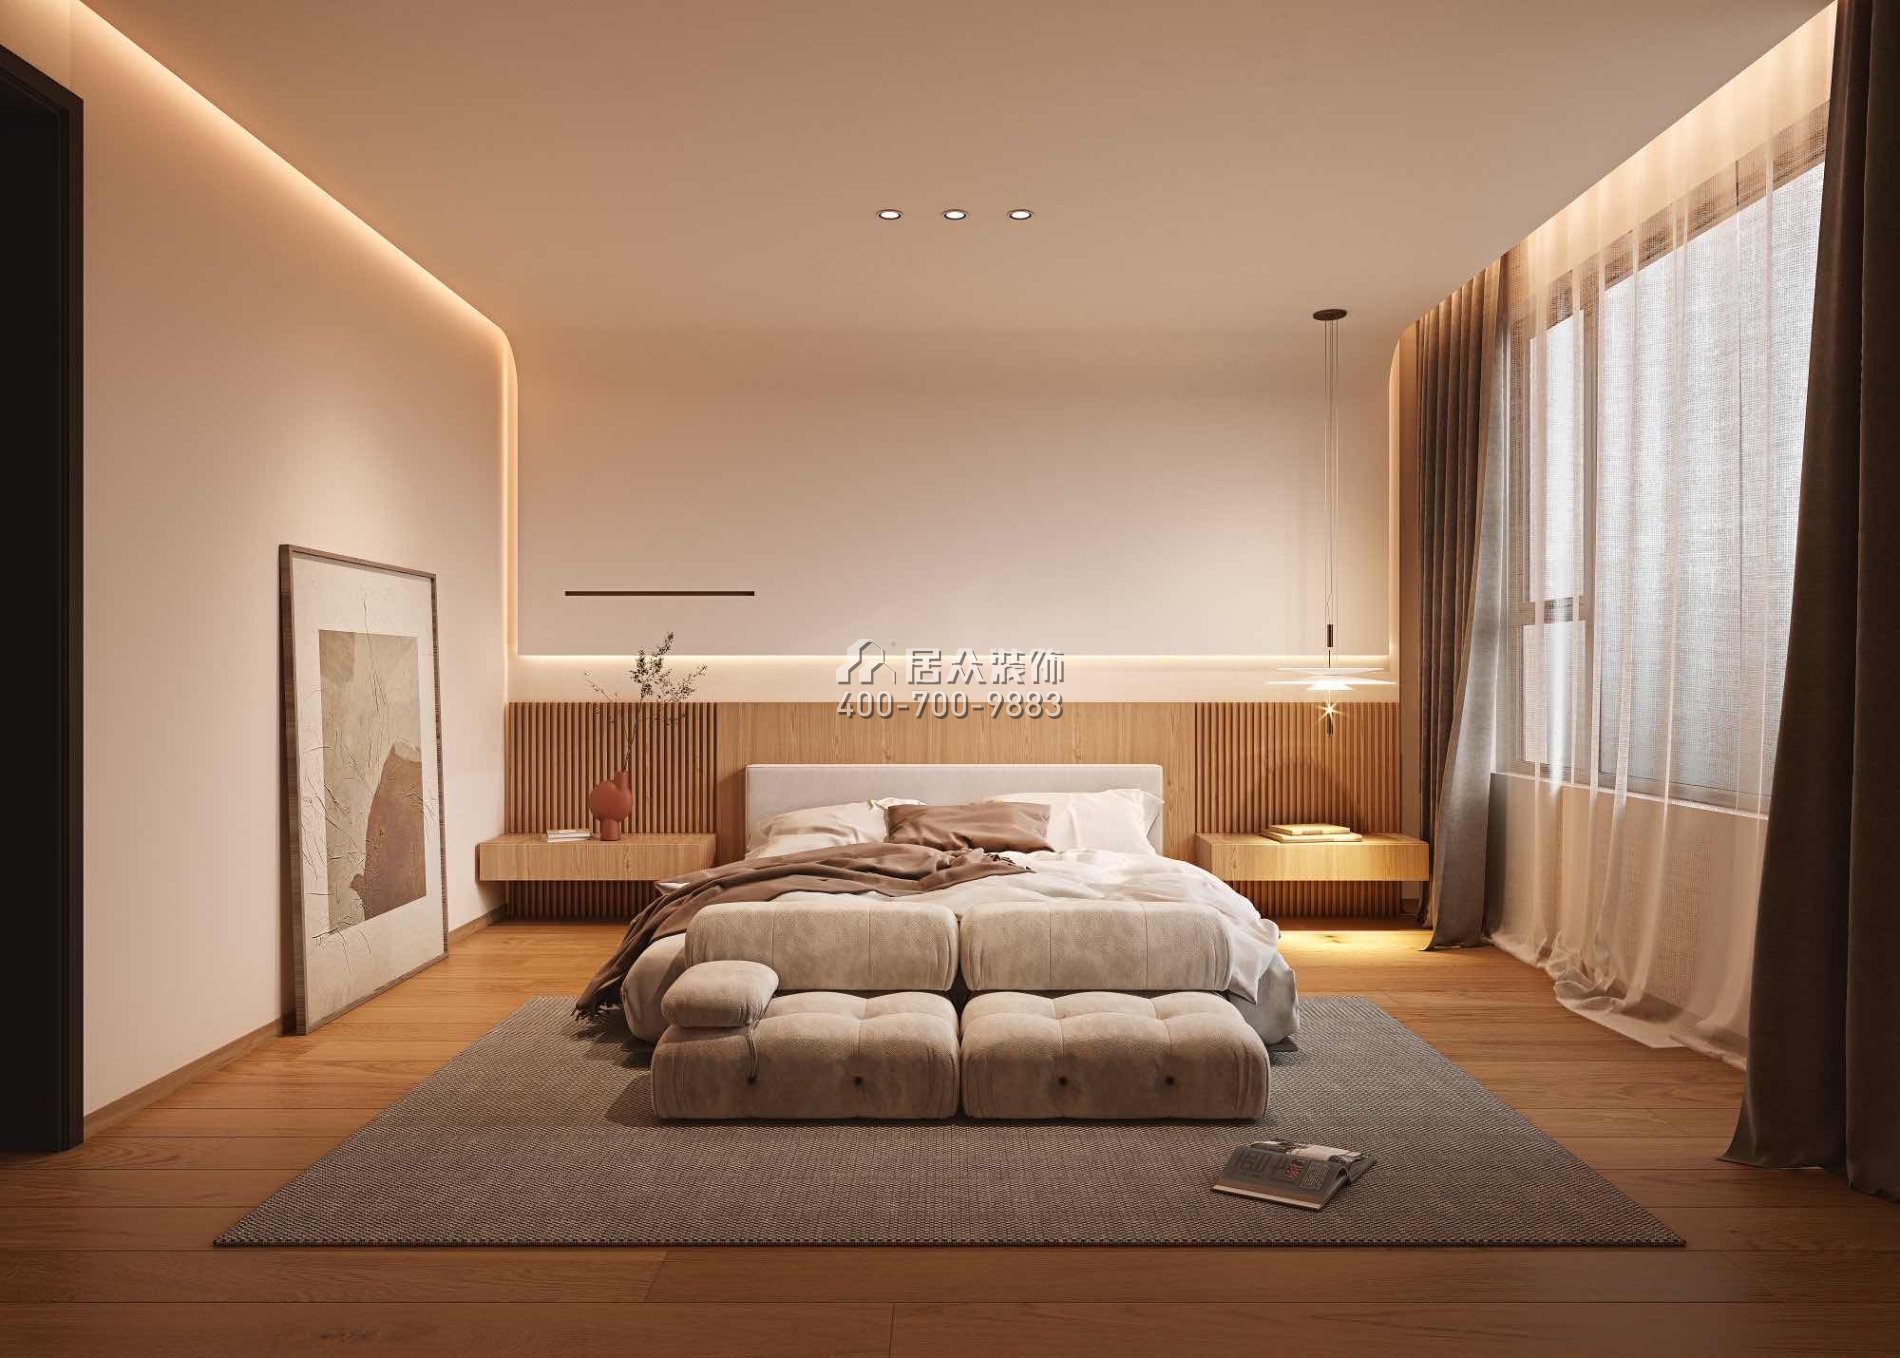 黄埔雅苑120平方米混搭风格平层户型卧室装修效果图